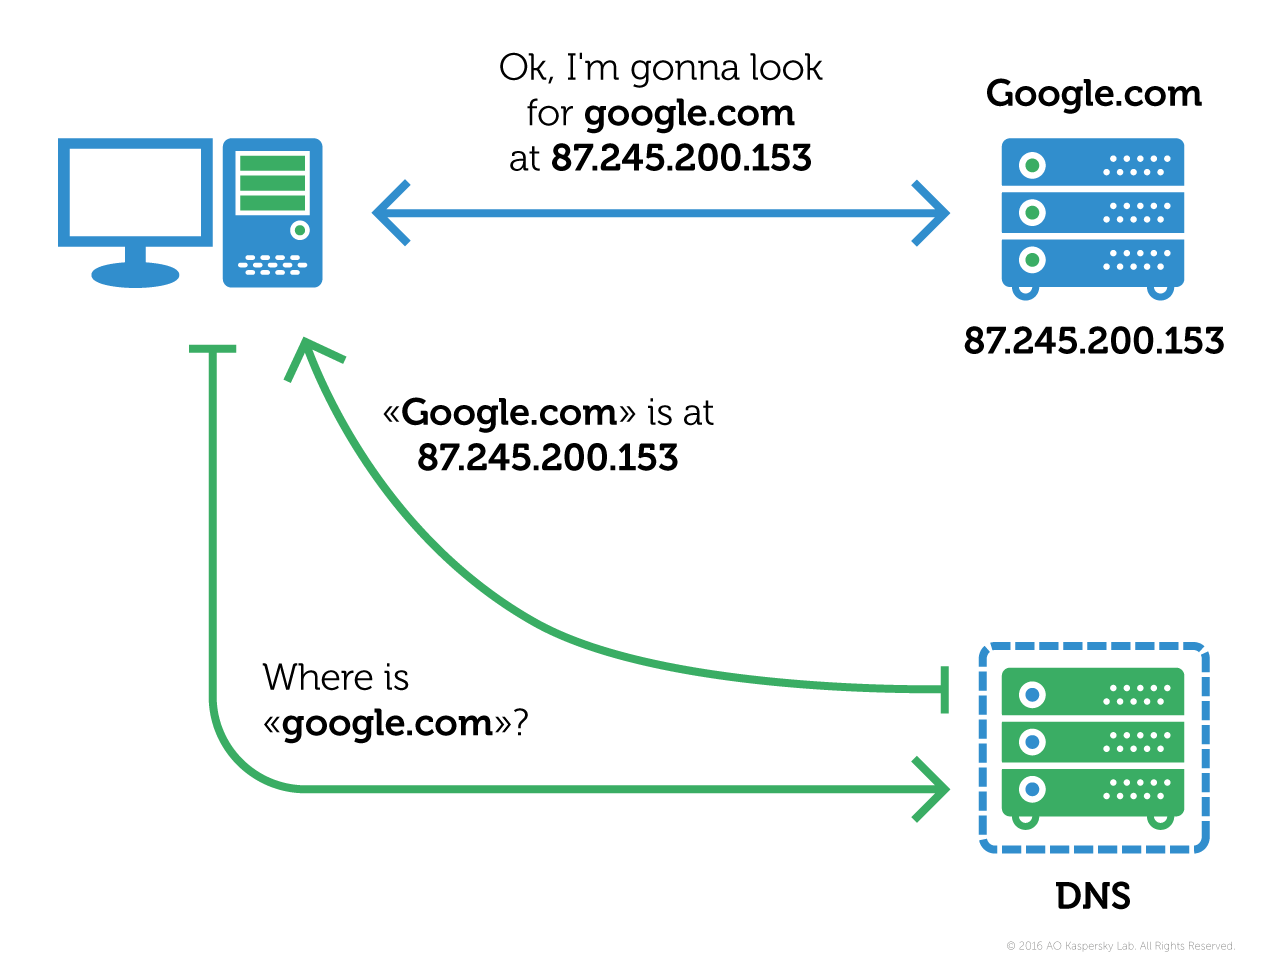 Vírus ou malware: infecções por vírus ou malware podem interferir na conexão com o servidor DNS.
Cache DNS corrompido: o cache DNS armazenado no computador pode estar corrompido, causando o erro.